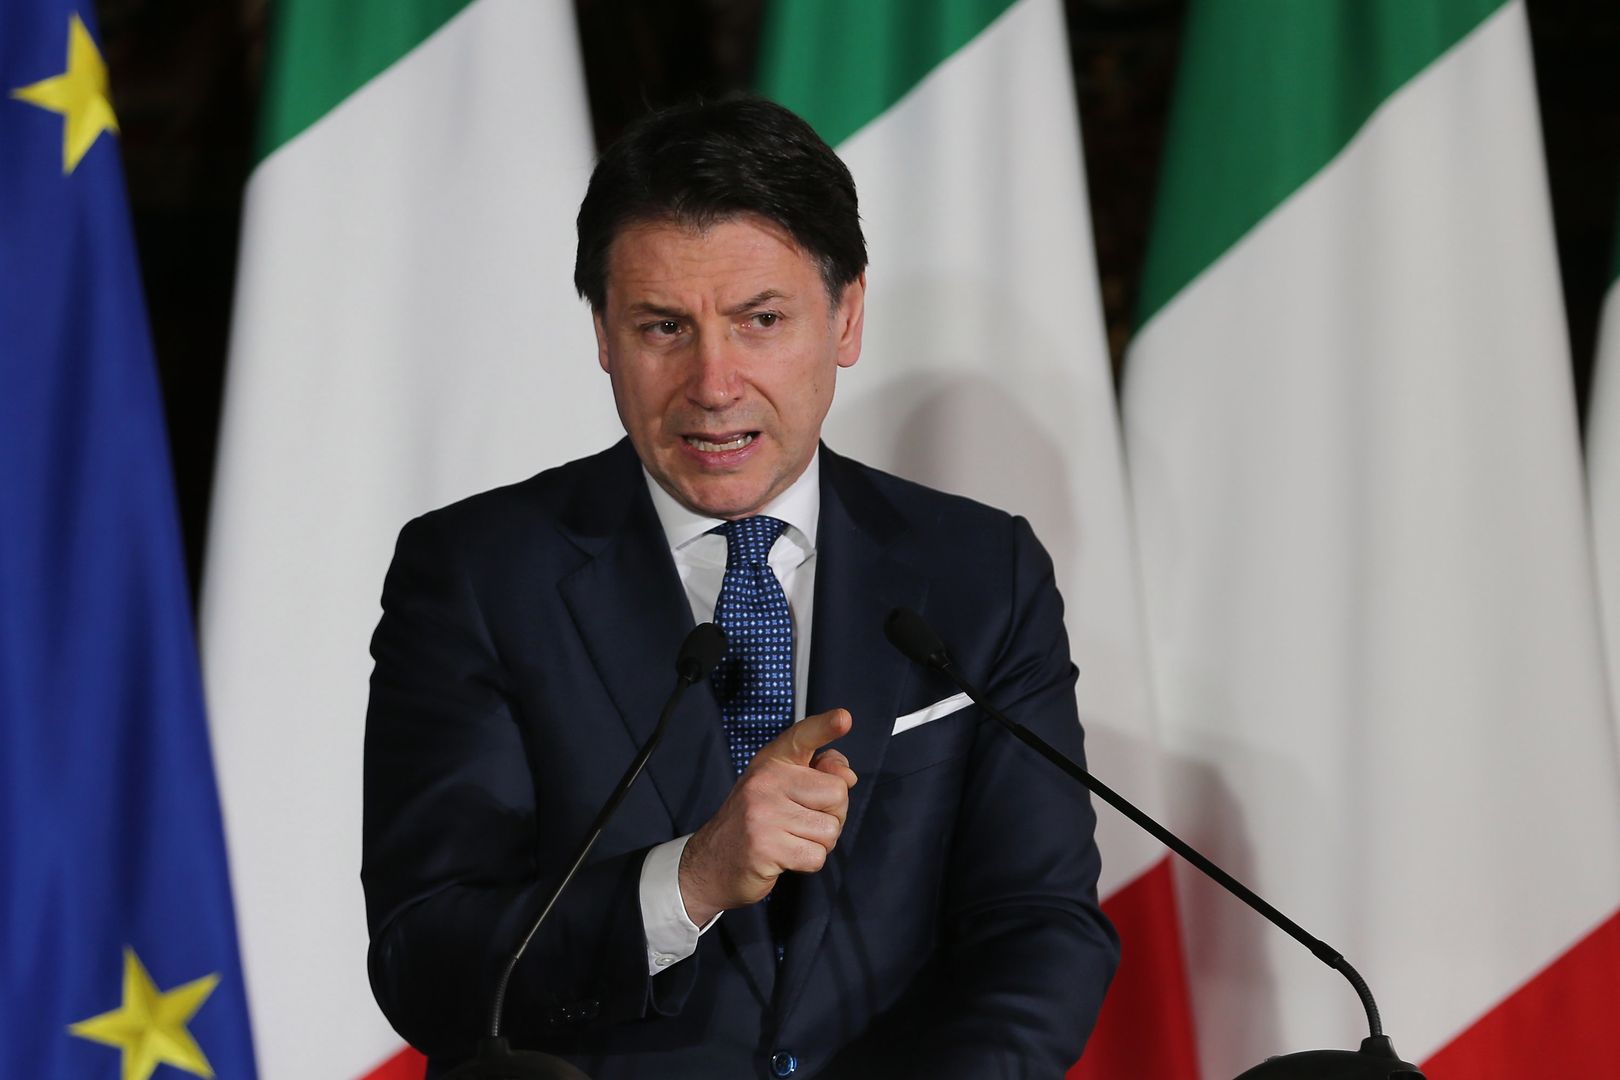 Premier Włoch ostrzega przed rozpadem Unii Europejskiej. Powodem może być "koronakryzys"